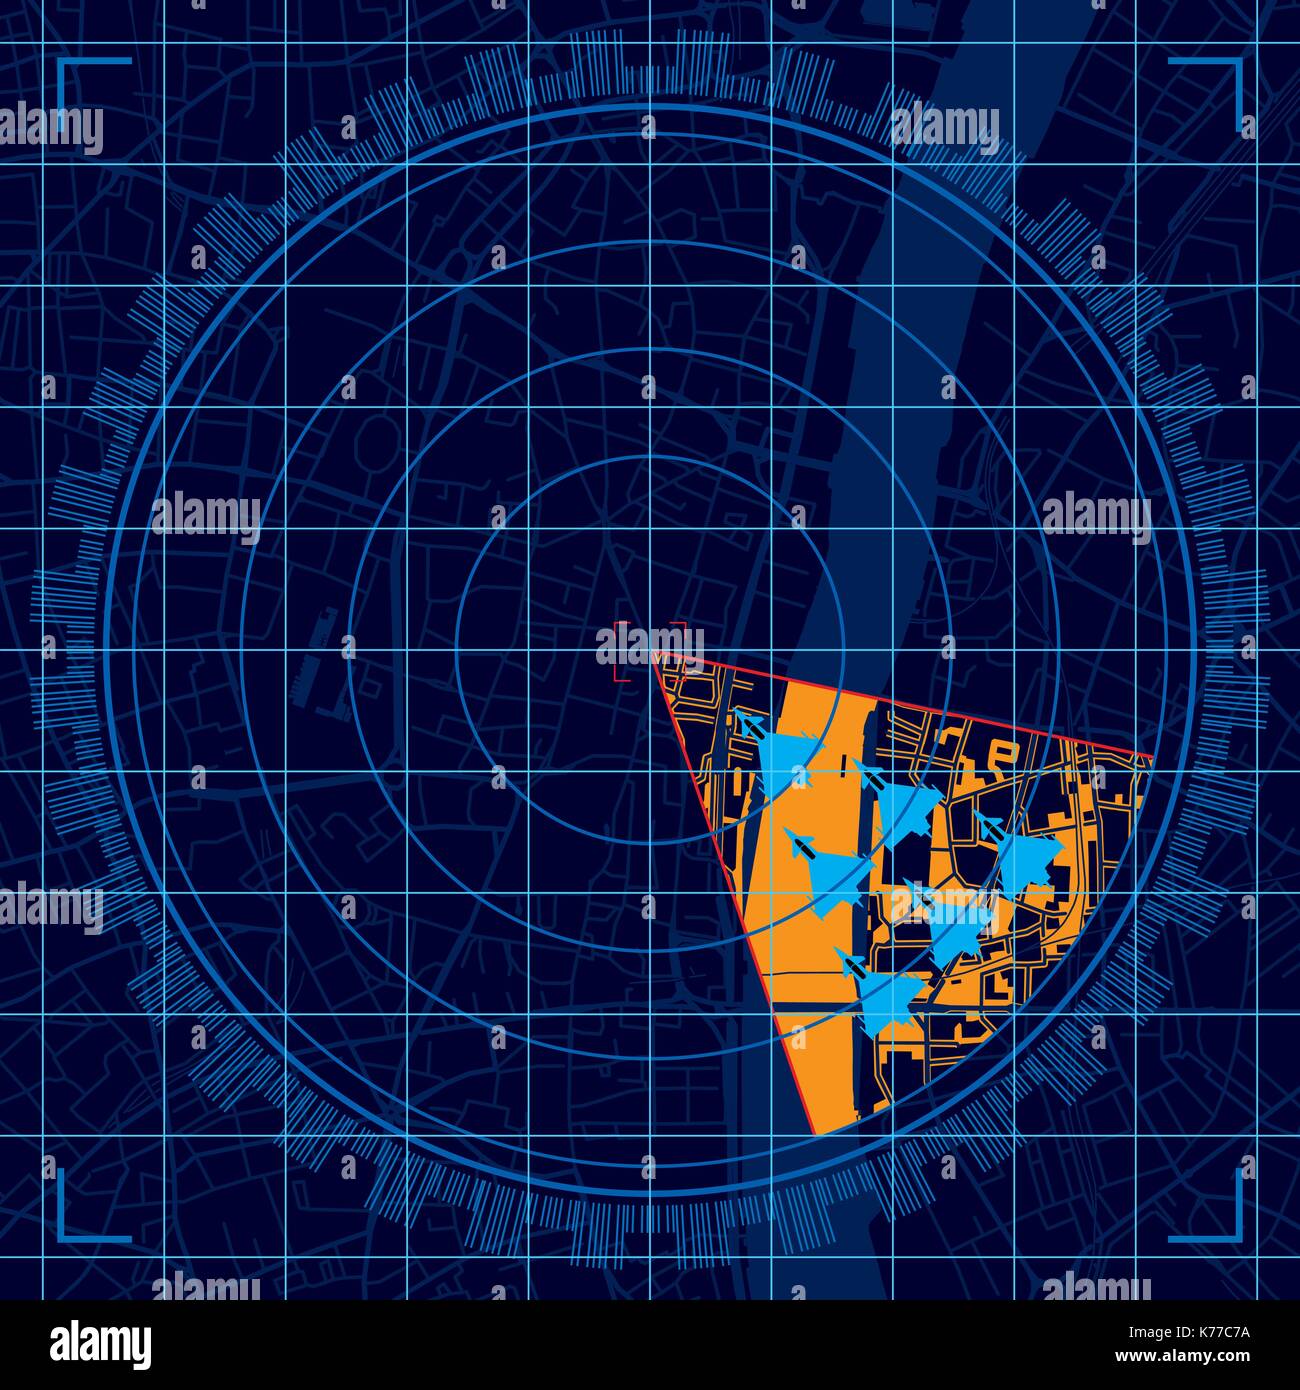 Blu sullo schermo radar di rilevare un gruppo di aerei militari volare in formazione nel corso di una città - immagine vettoriale Illustrazione Vettoriale